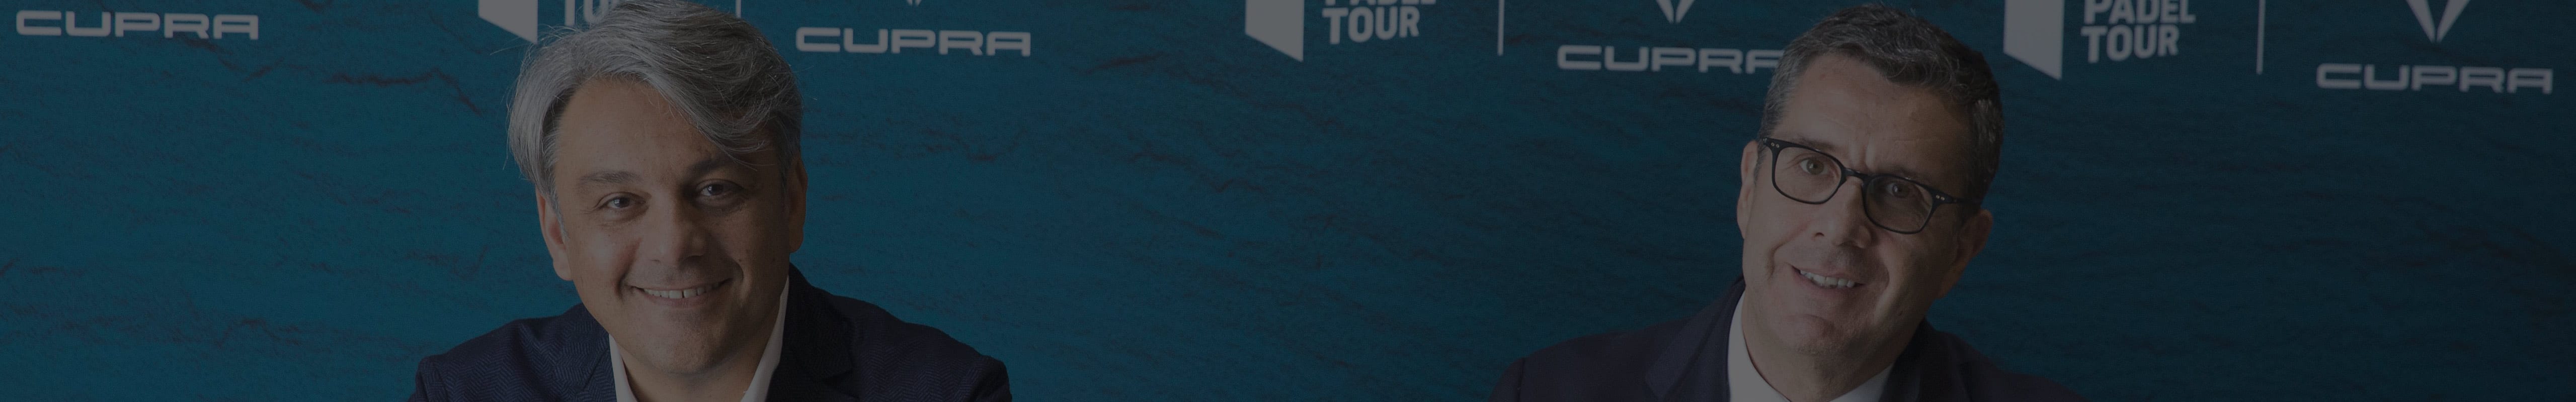 CUPRA s'associe au World Padel Tour jusqu'en 2021